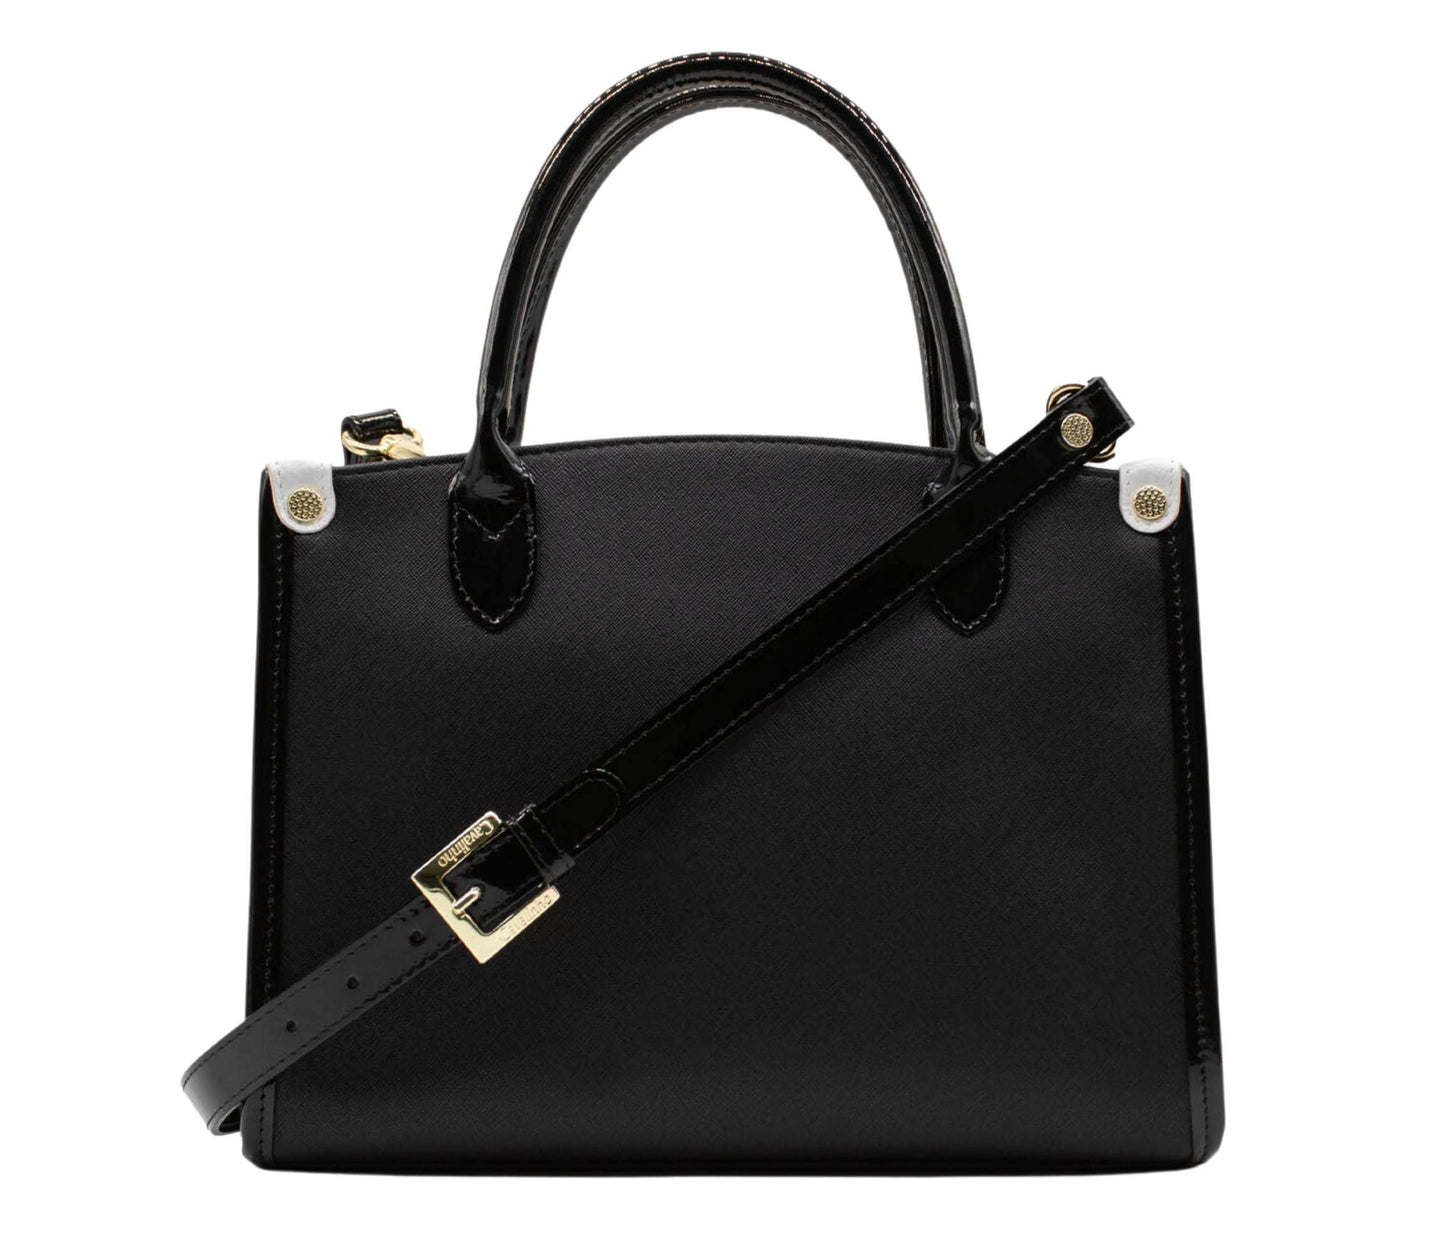 #color_ Black and White | Cavalinho Royal Handbag - Black and White - 18390480.21.99_3